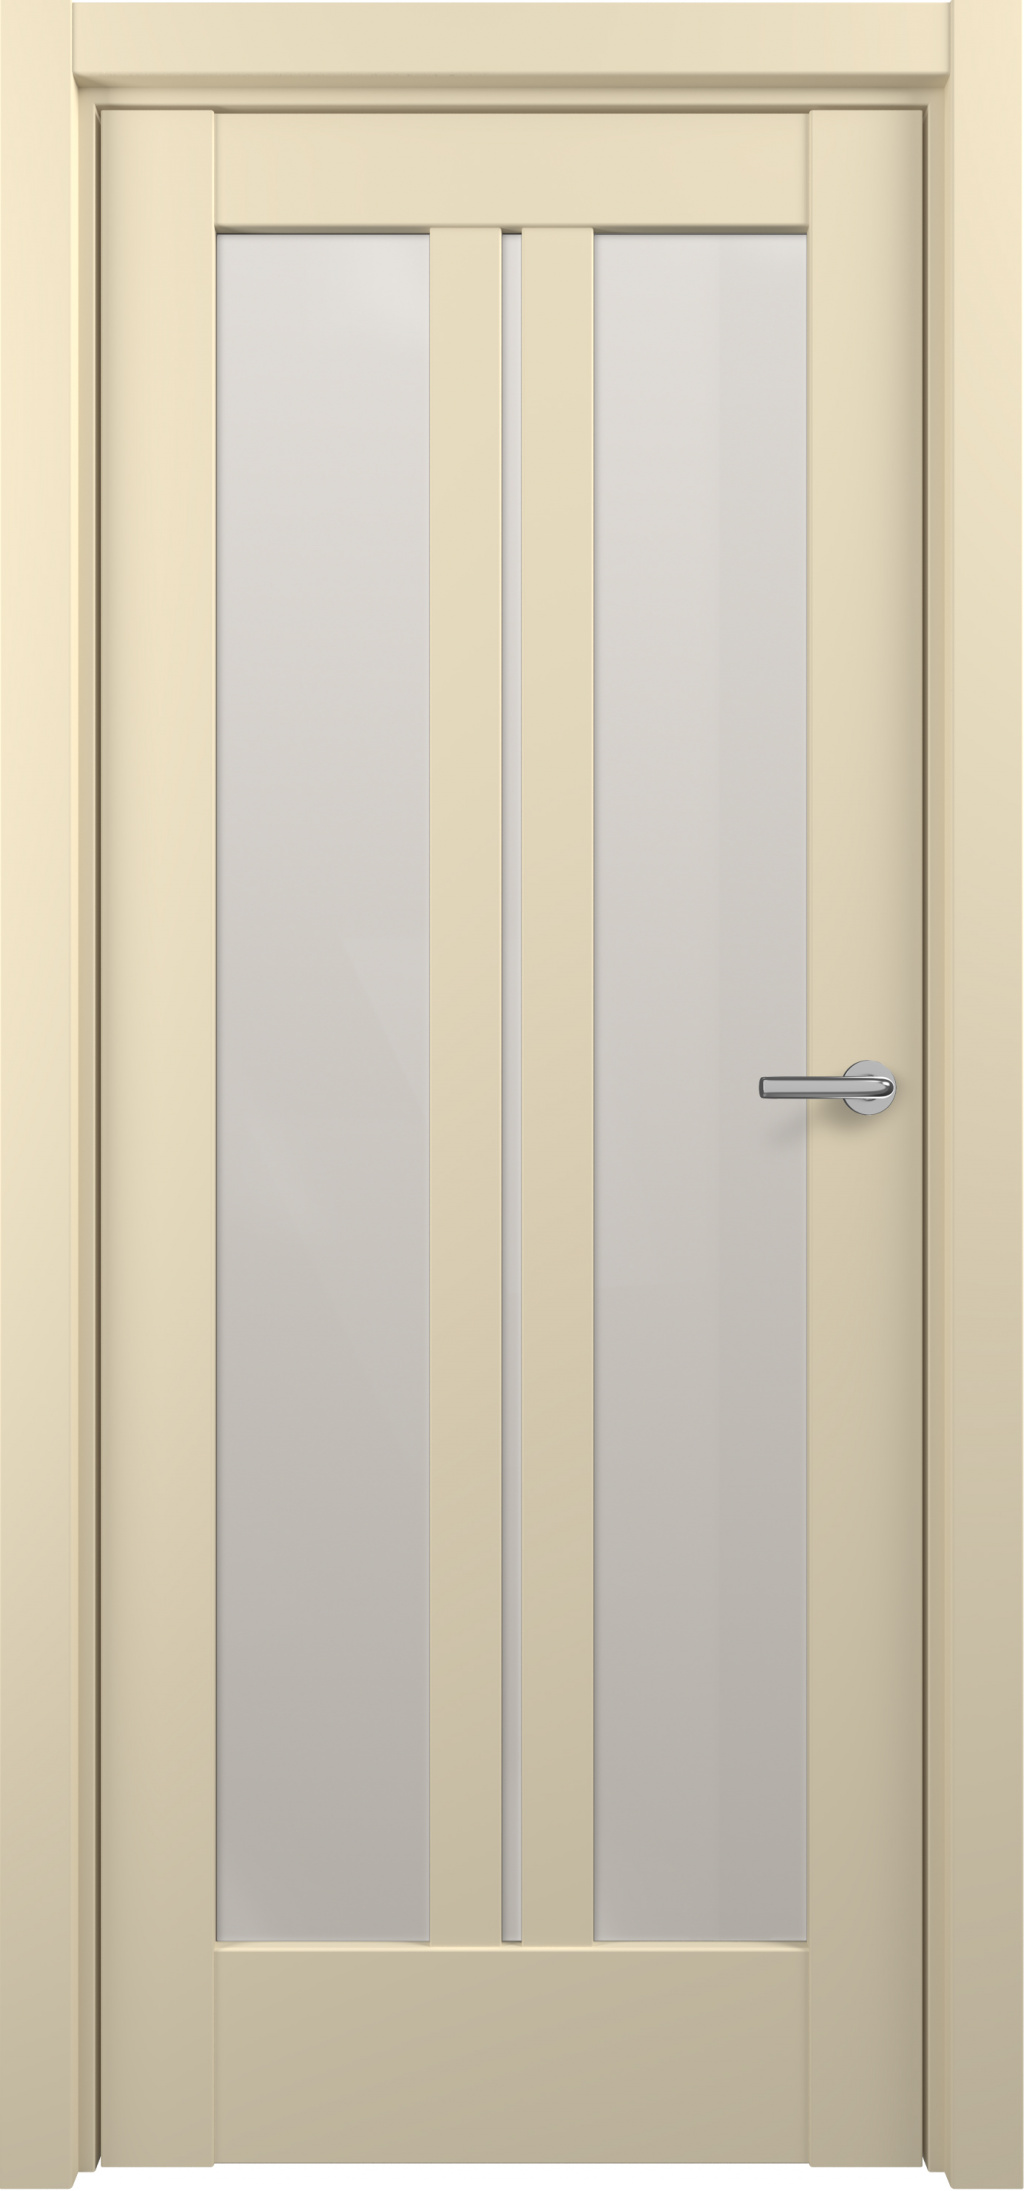 Zadoor Межкомнатная дверь S20, арт. 15827 - фото №1